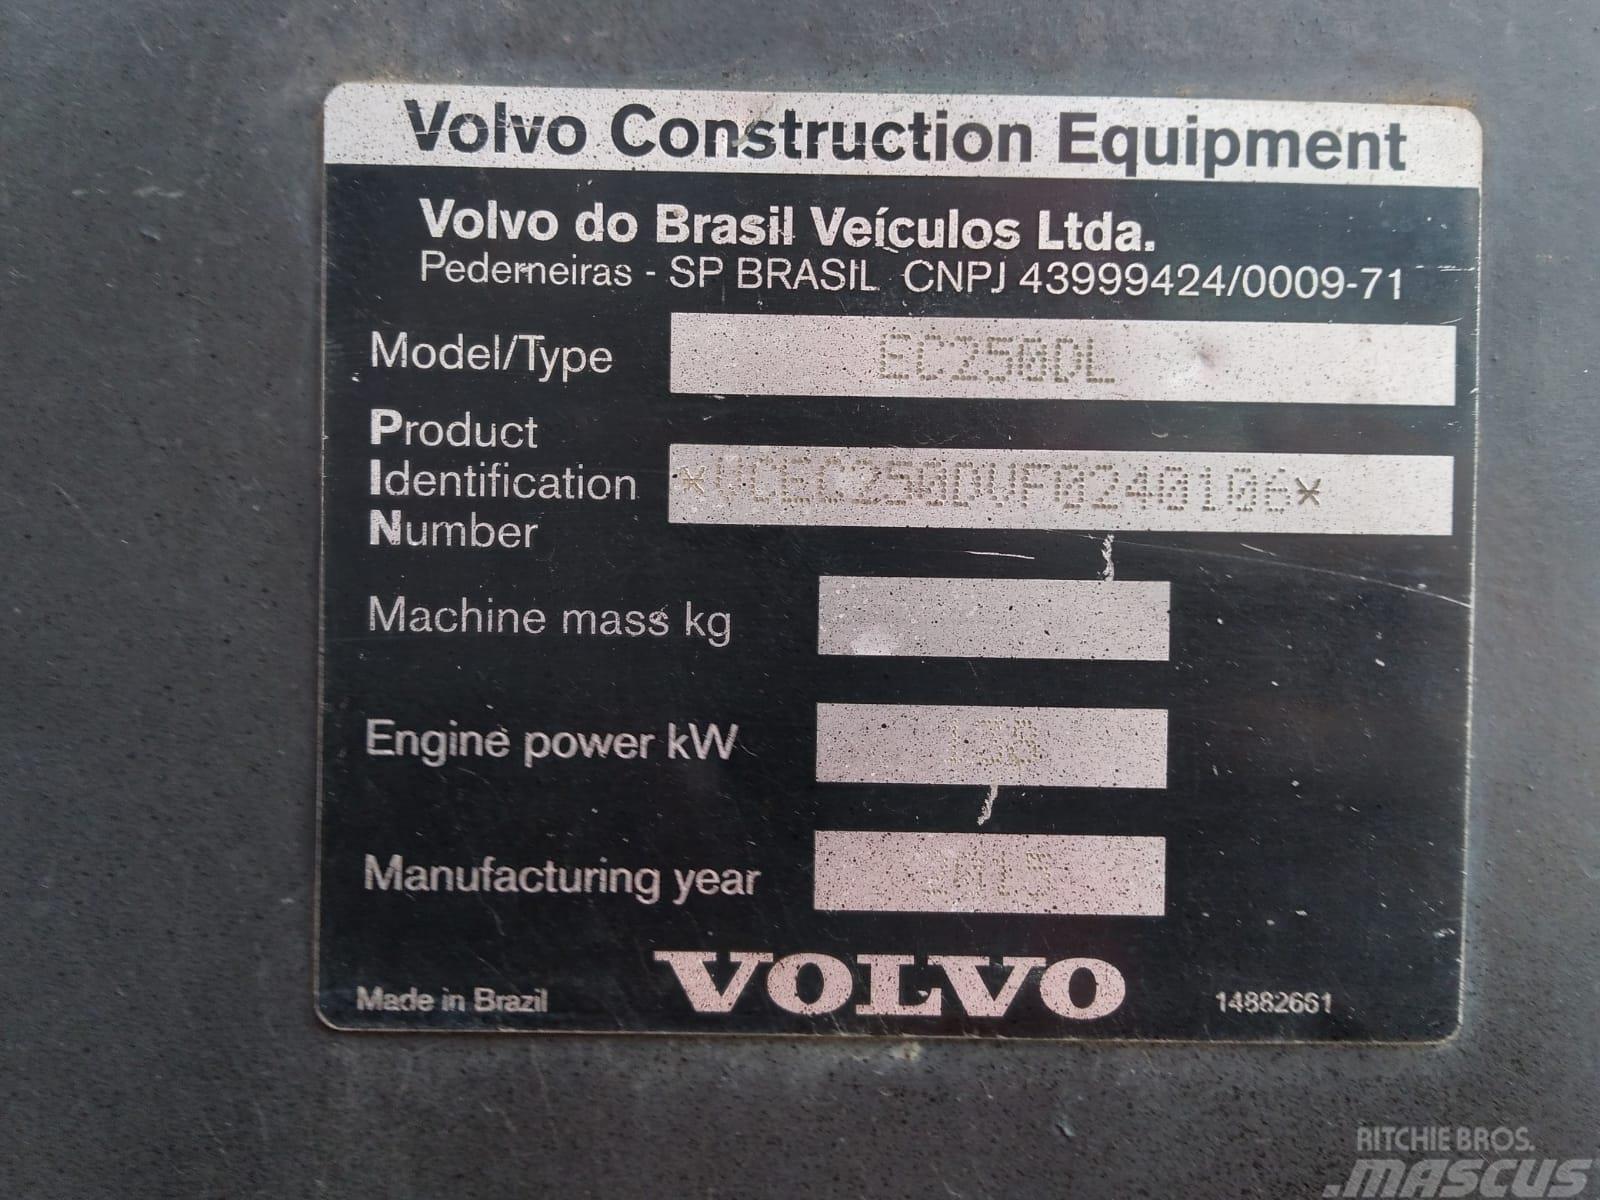 Volvo EC 250 D L Kāpurķēžu ekskavatori